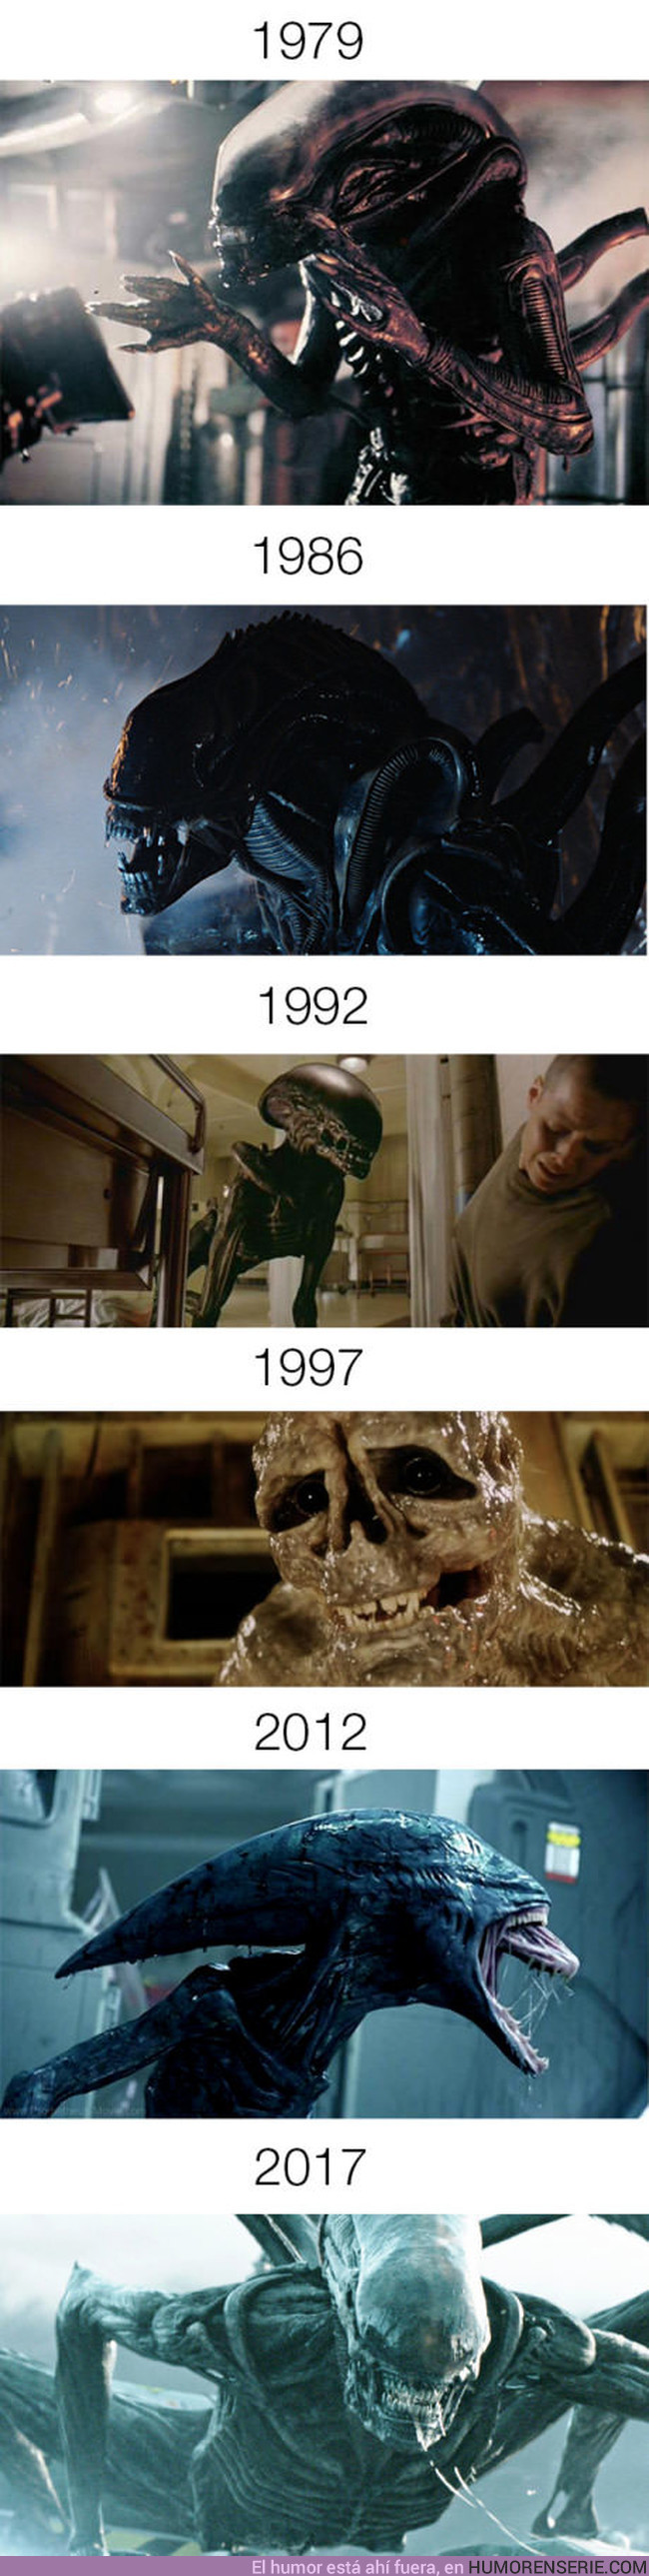 12456 - La evolución de Alien de 1979 a 2017